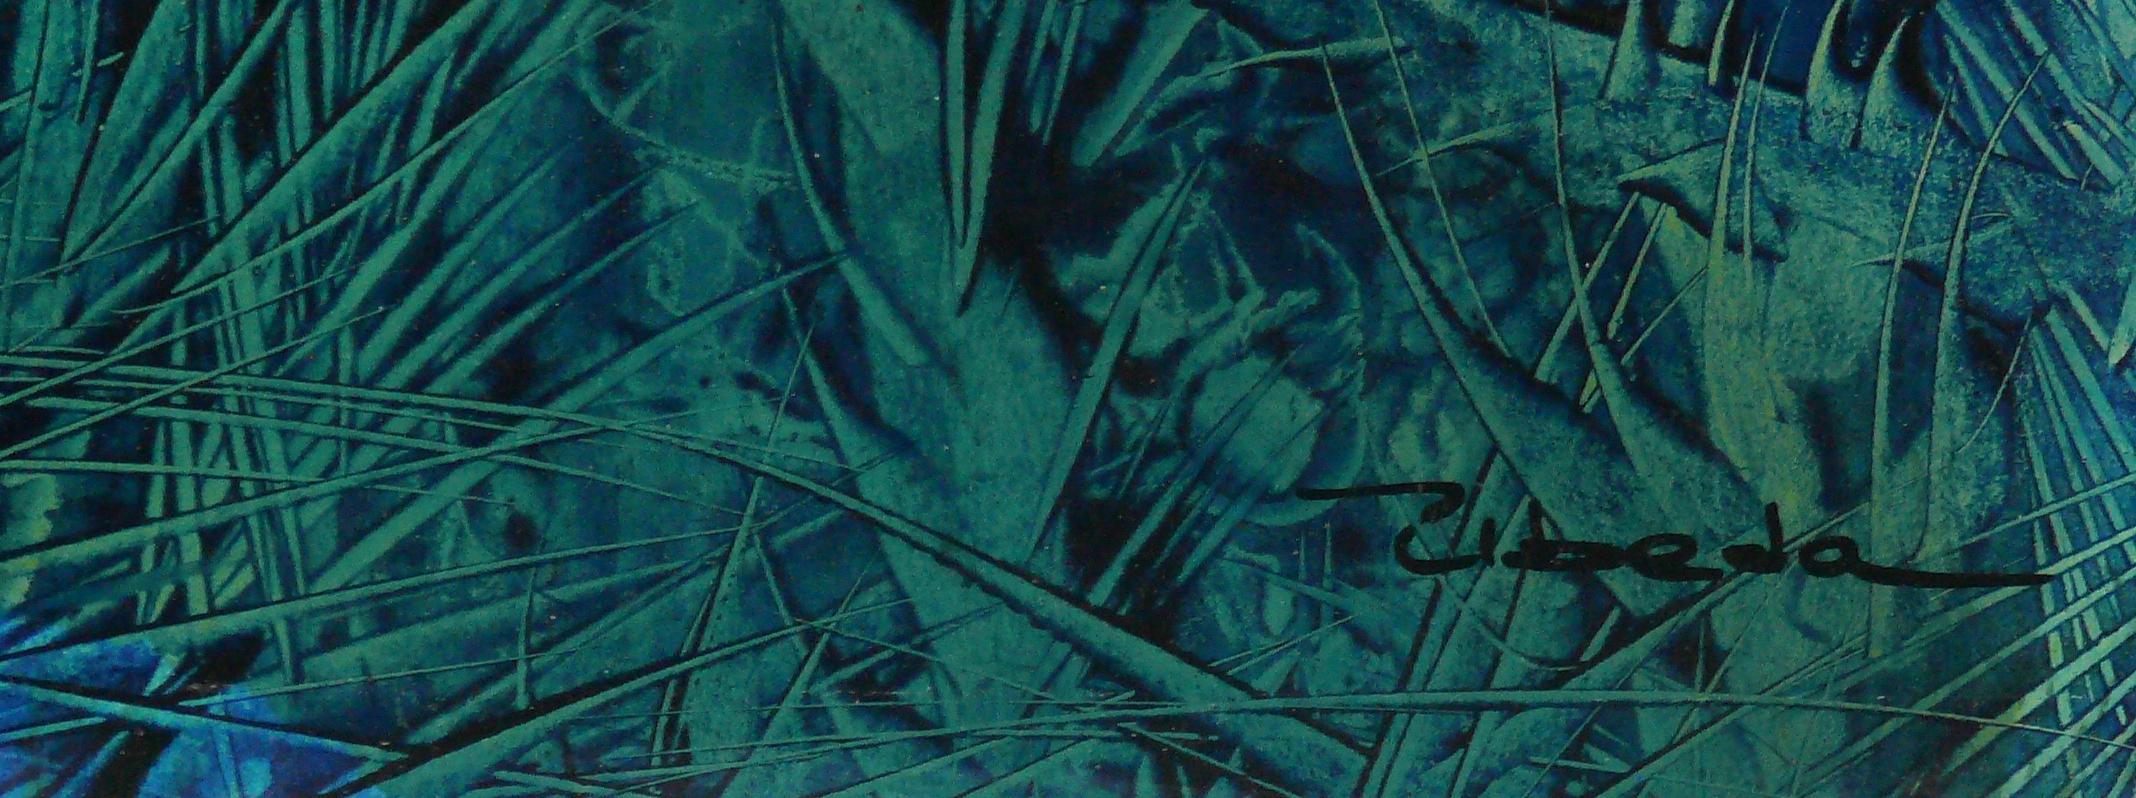 Série Under The Sea, Nº 10. Úbeda. Paysage fantastique bleu vert sous-eau. - Moderne Painting par Ángel Luis Úbeda